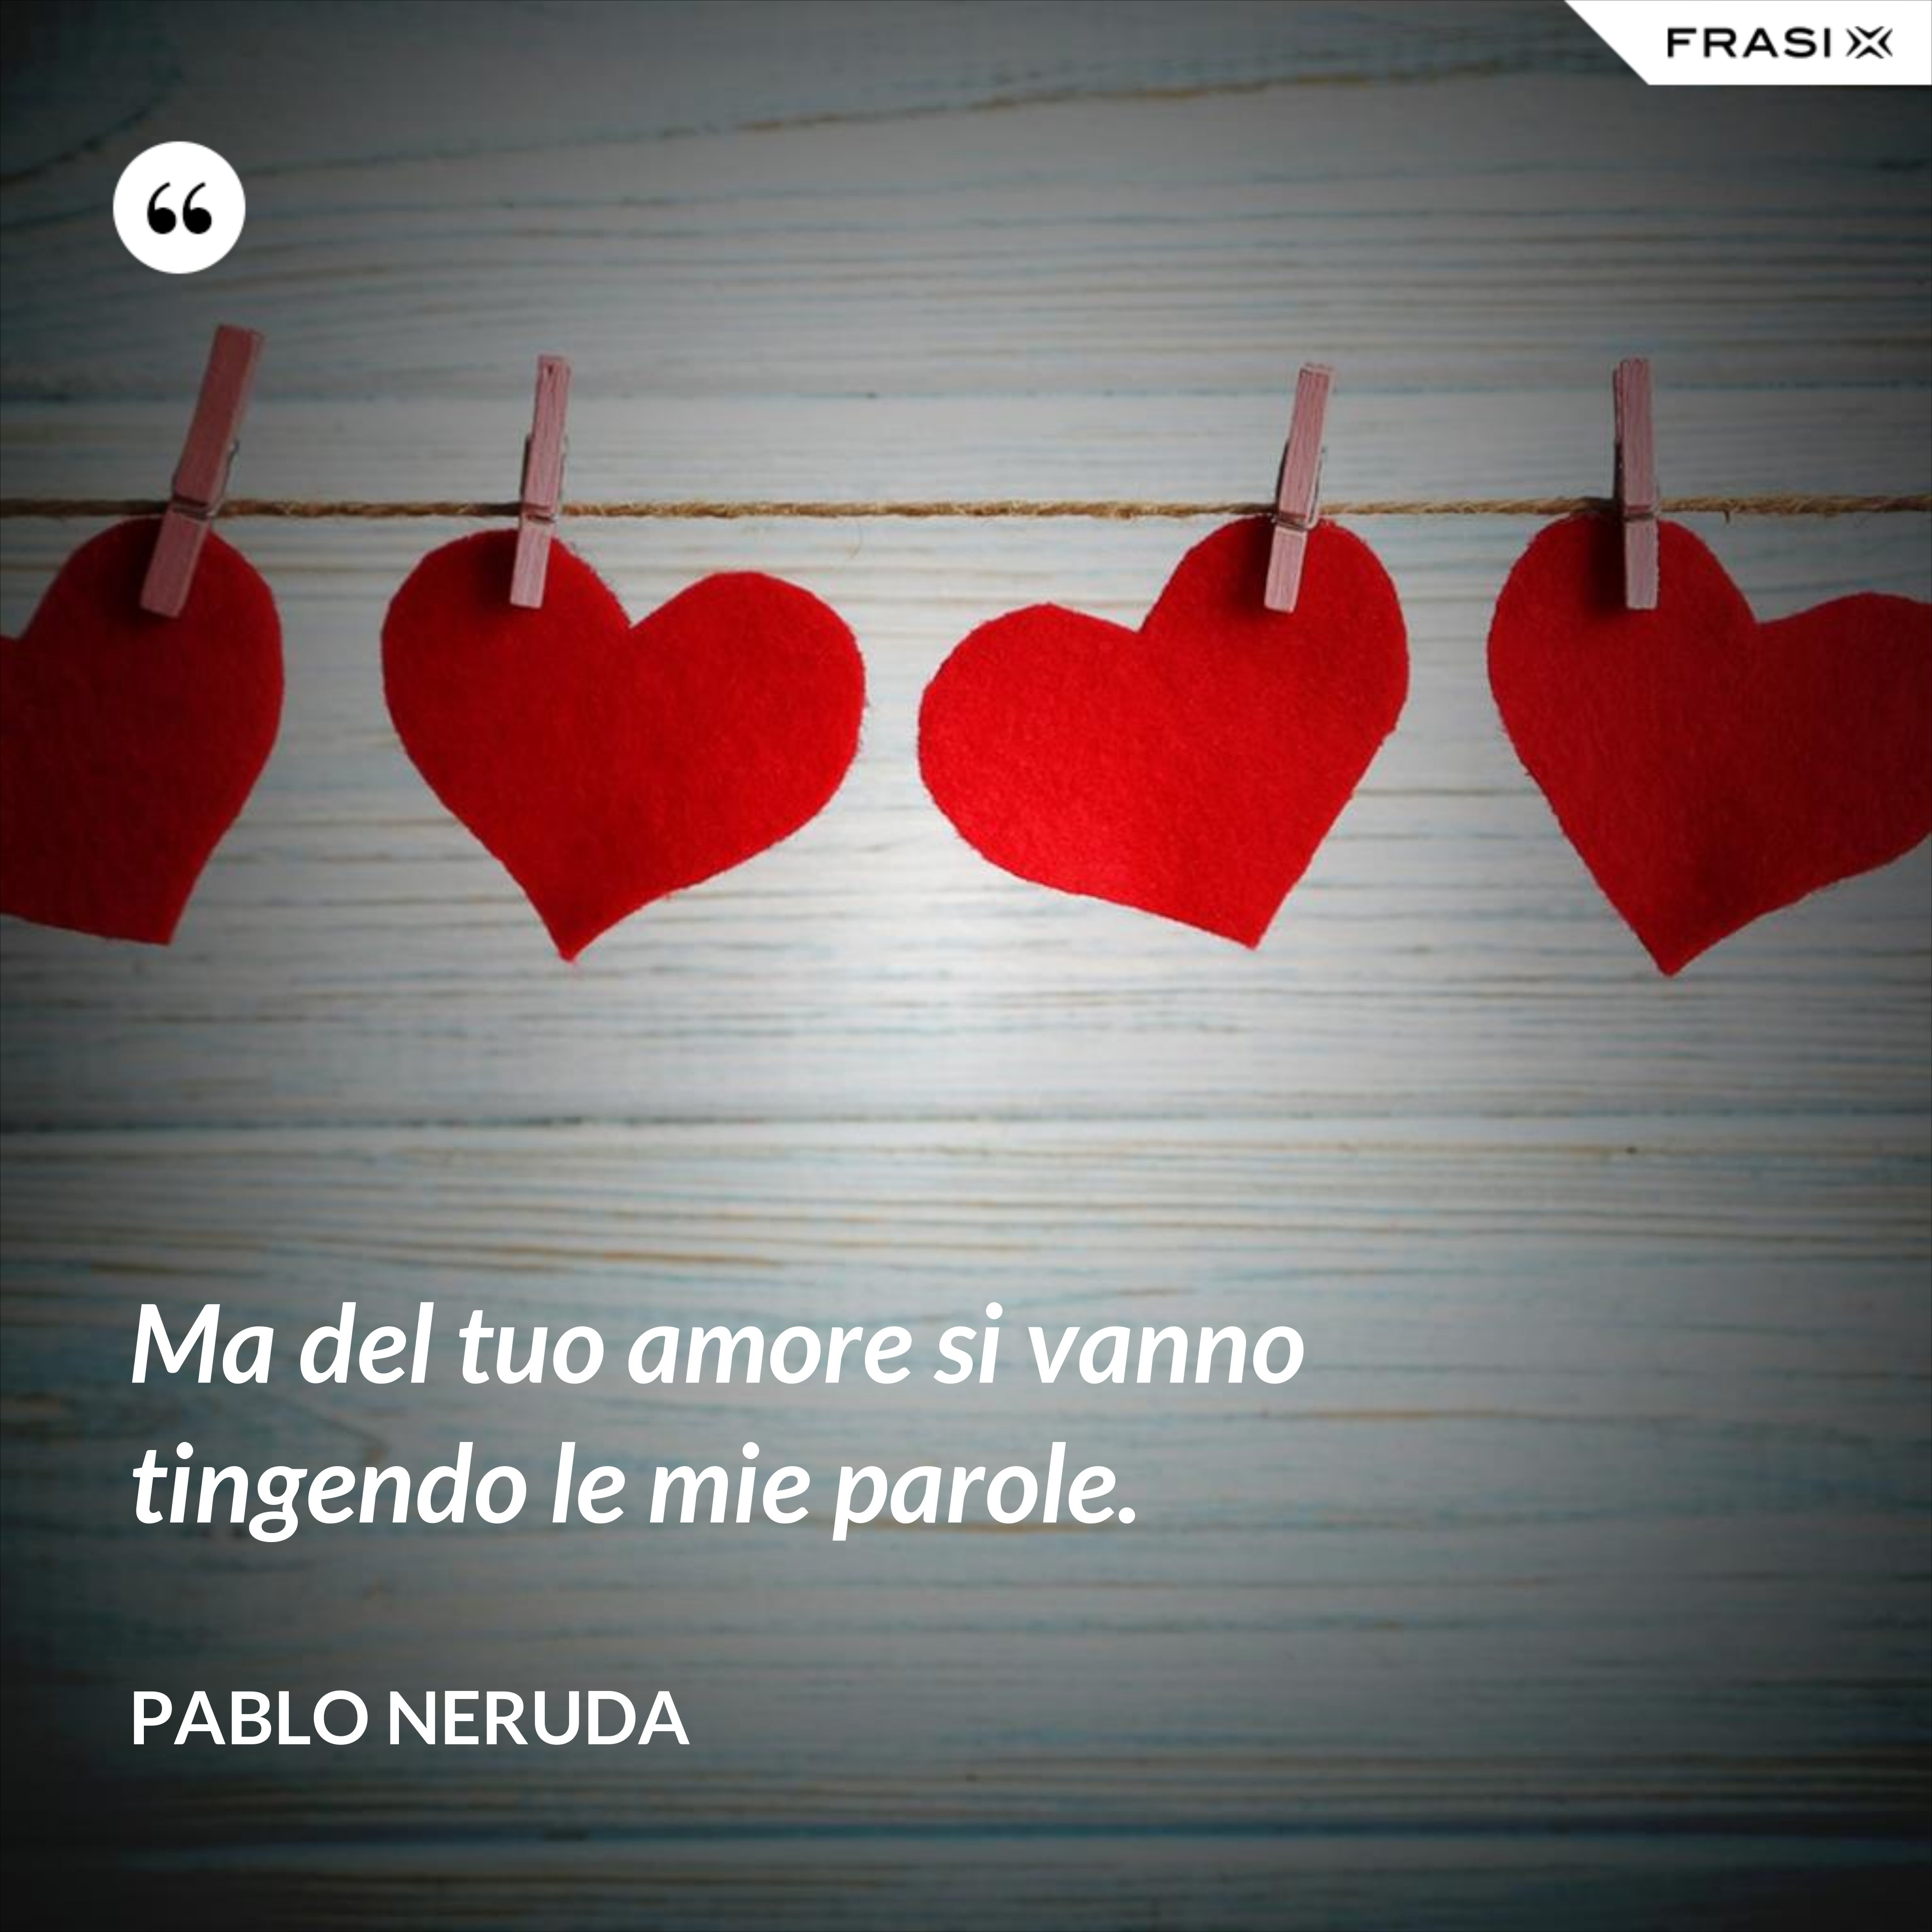 Ma del tuo amore si vanno tingendo le mie parole. - Pablo Neruda